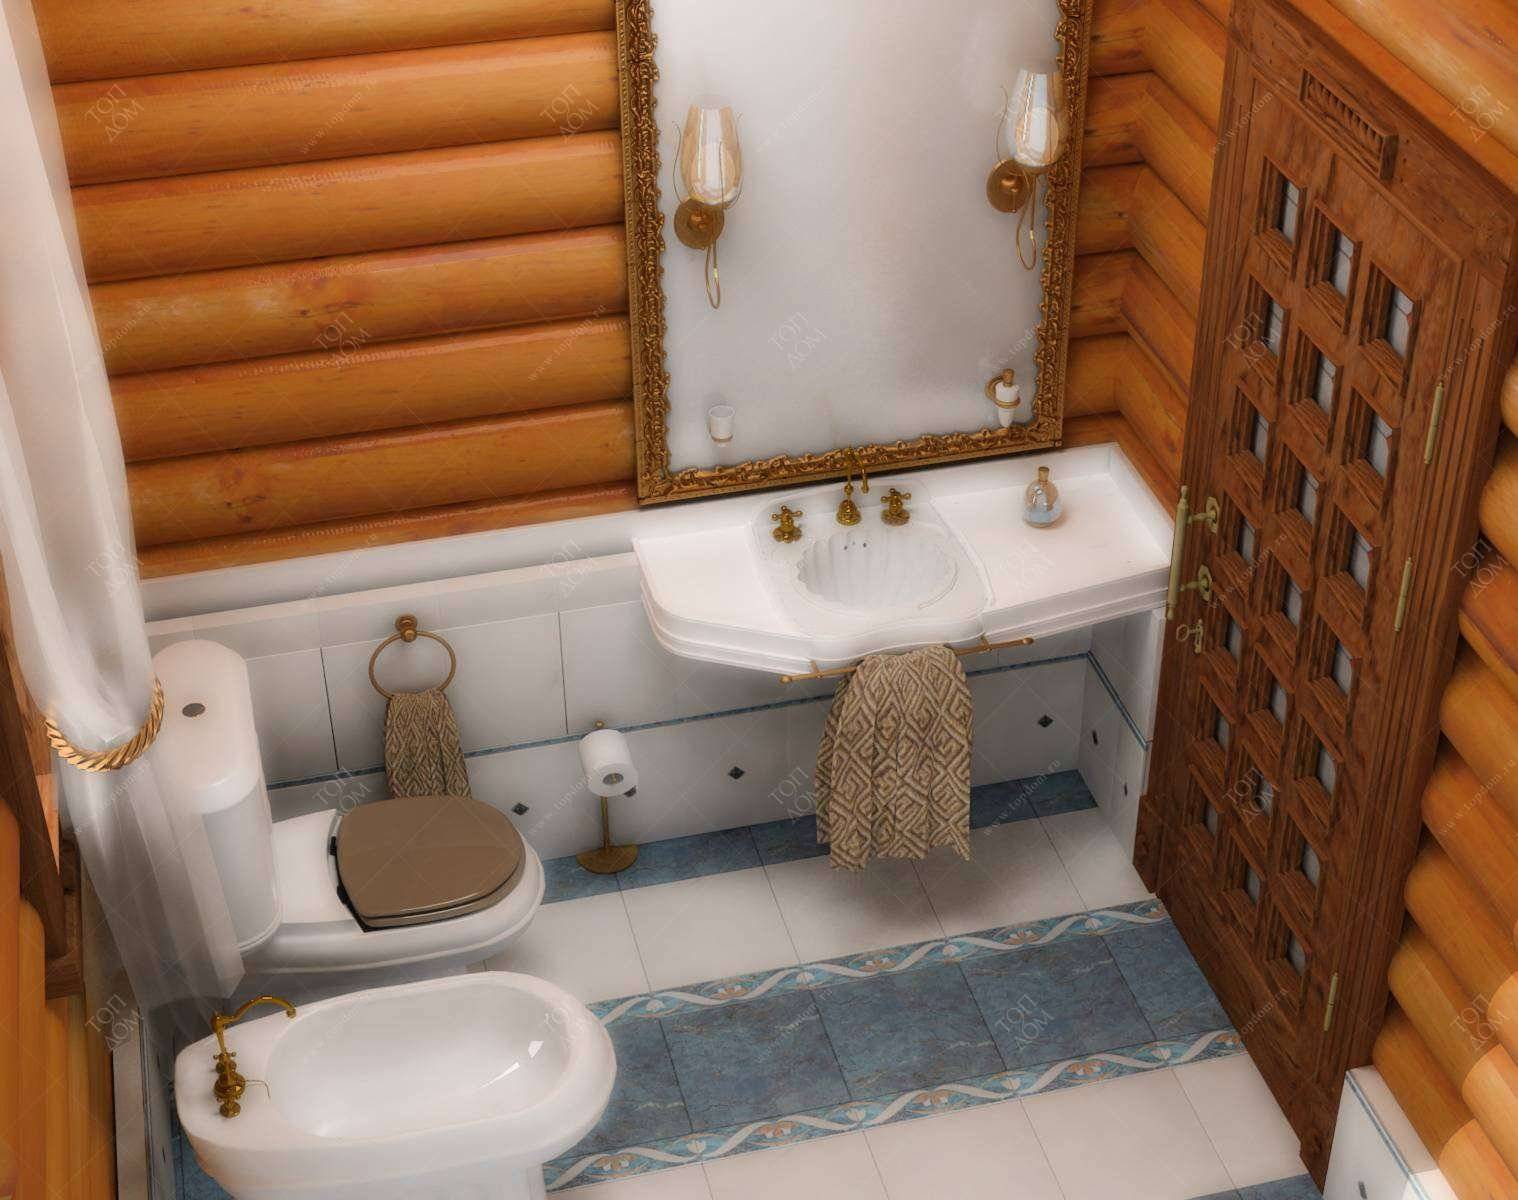 Строительство туалета со сливом на даче